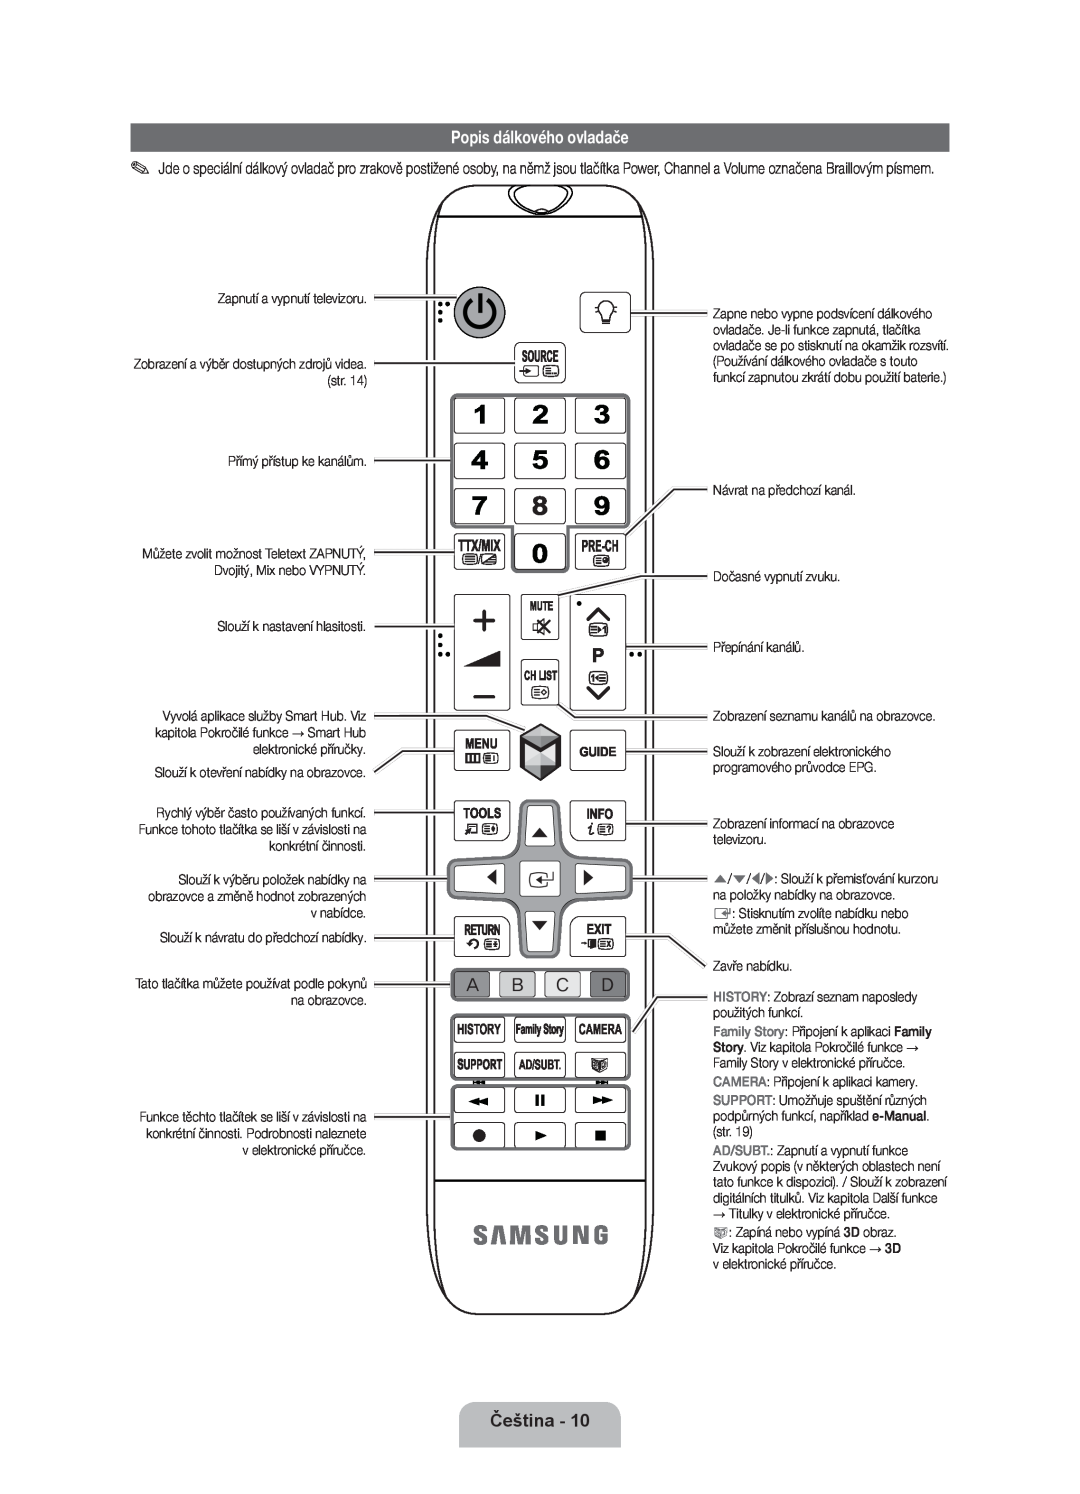 Samsung UE40ES8000SXXH, UE46ES8000SXXN, UE55ES8000SXXH manual Popis dálkového ovladače, Čeština, Camera, History, Ad/Subt 